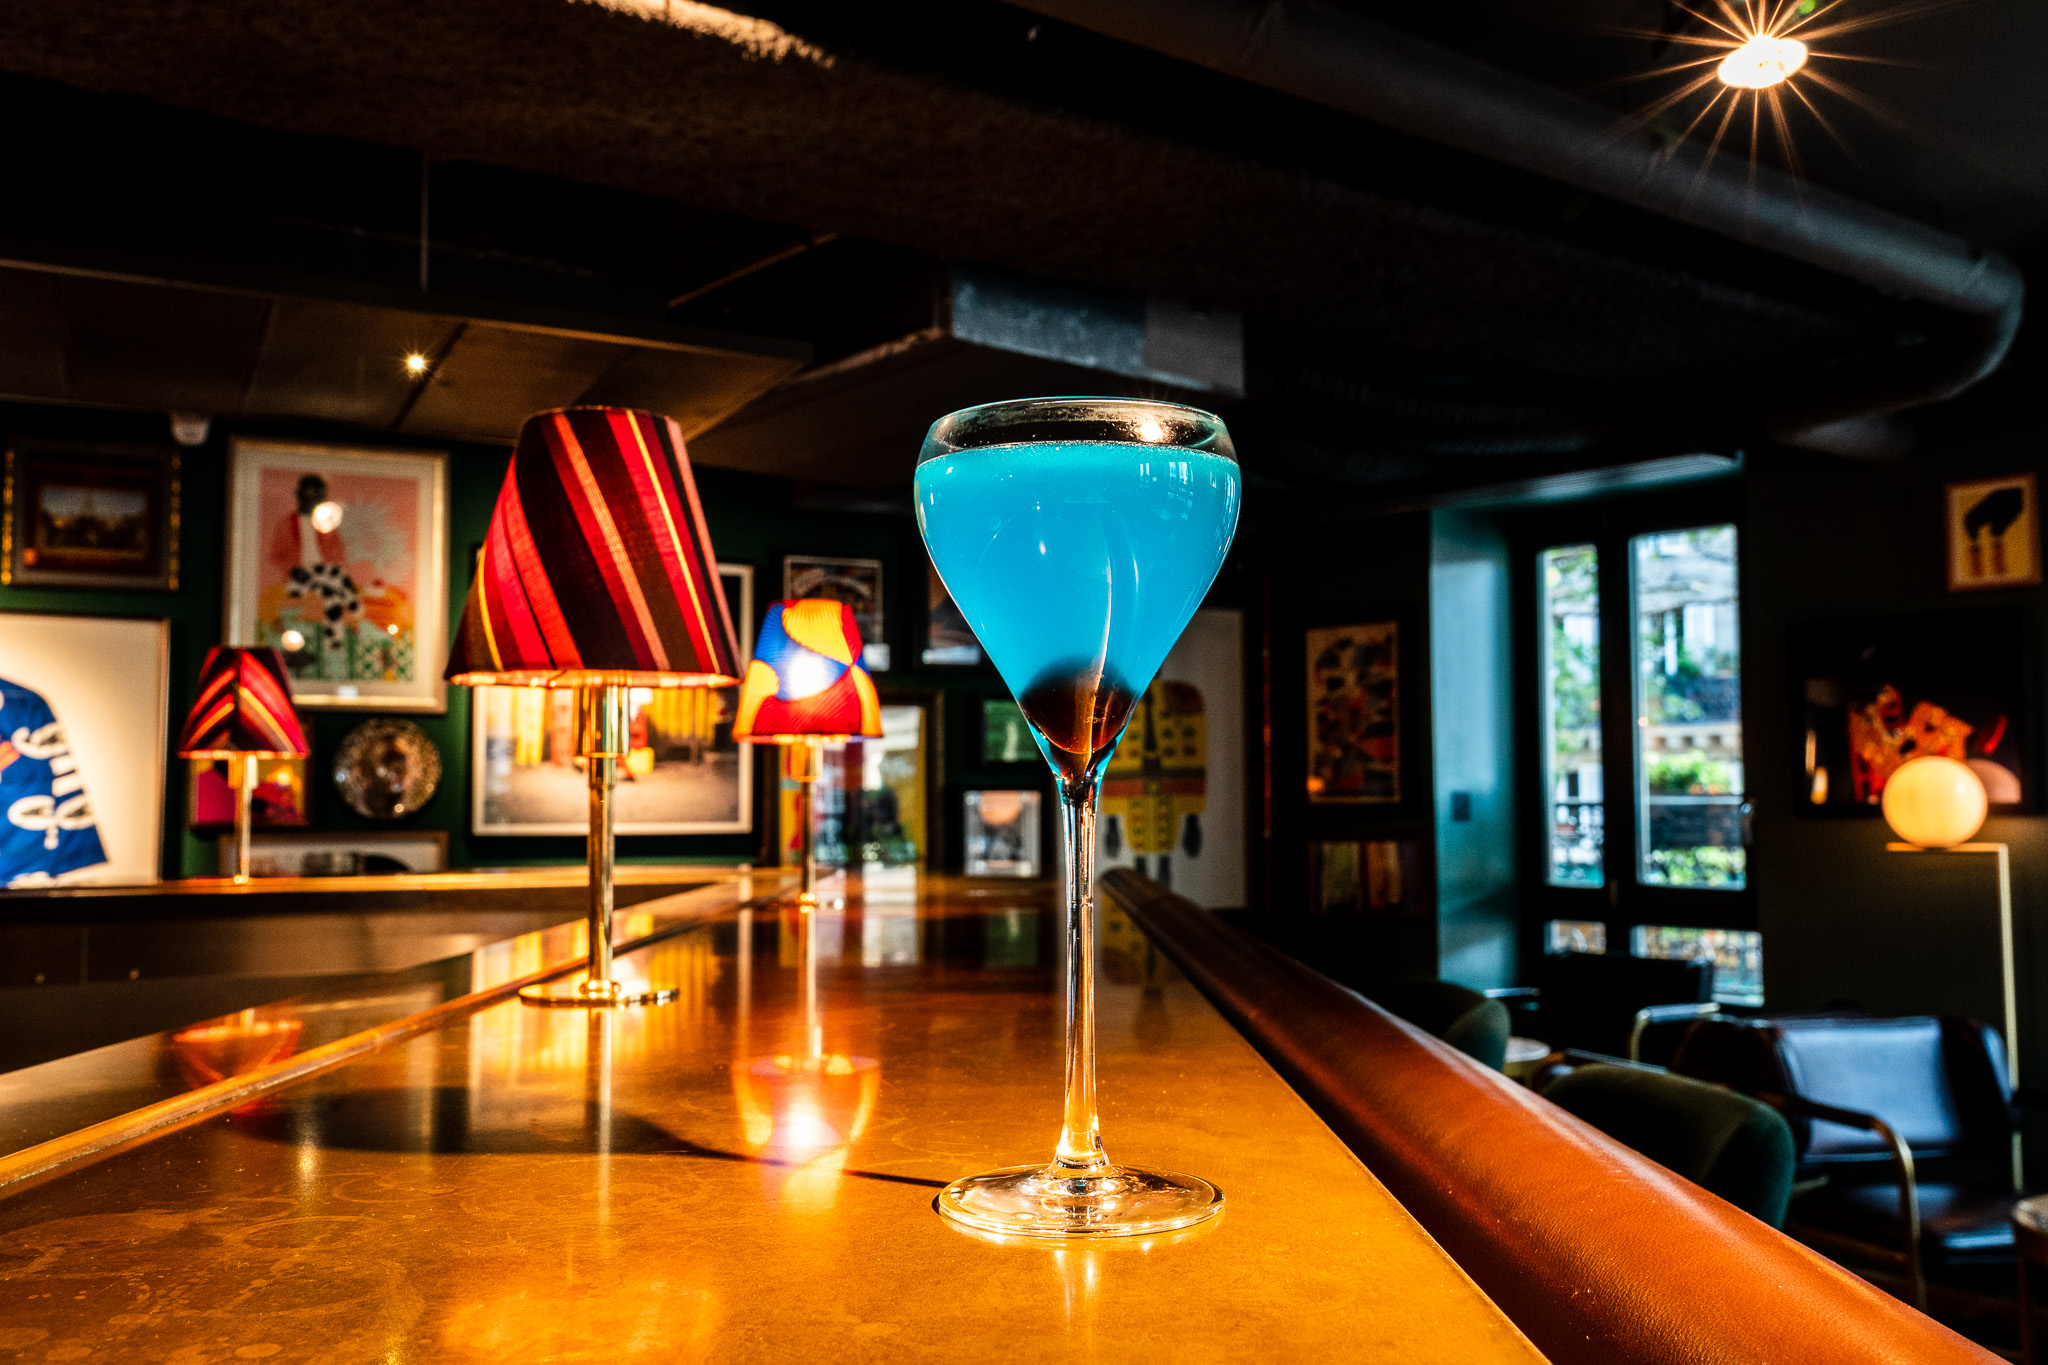 Une boisson bleu vif sur le comptoir du Sape Bar - A bright blue drink on the counter of the Sape Bar